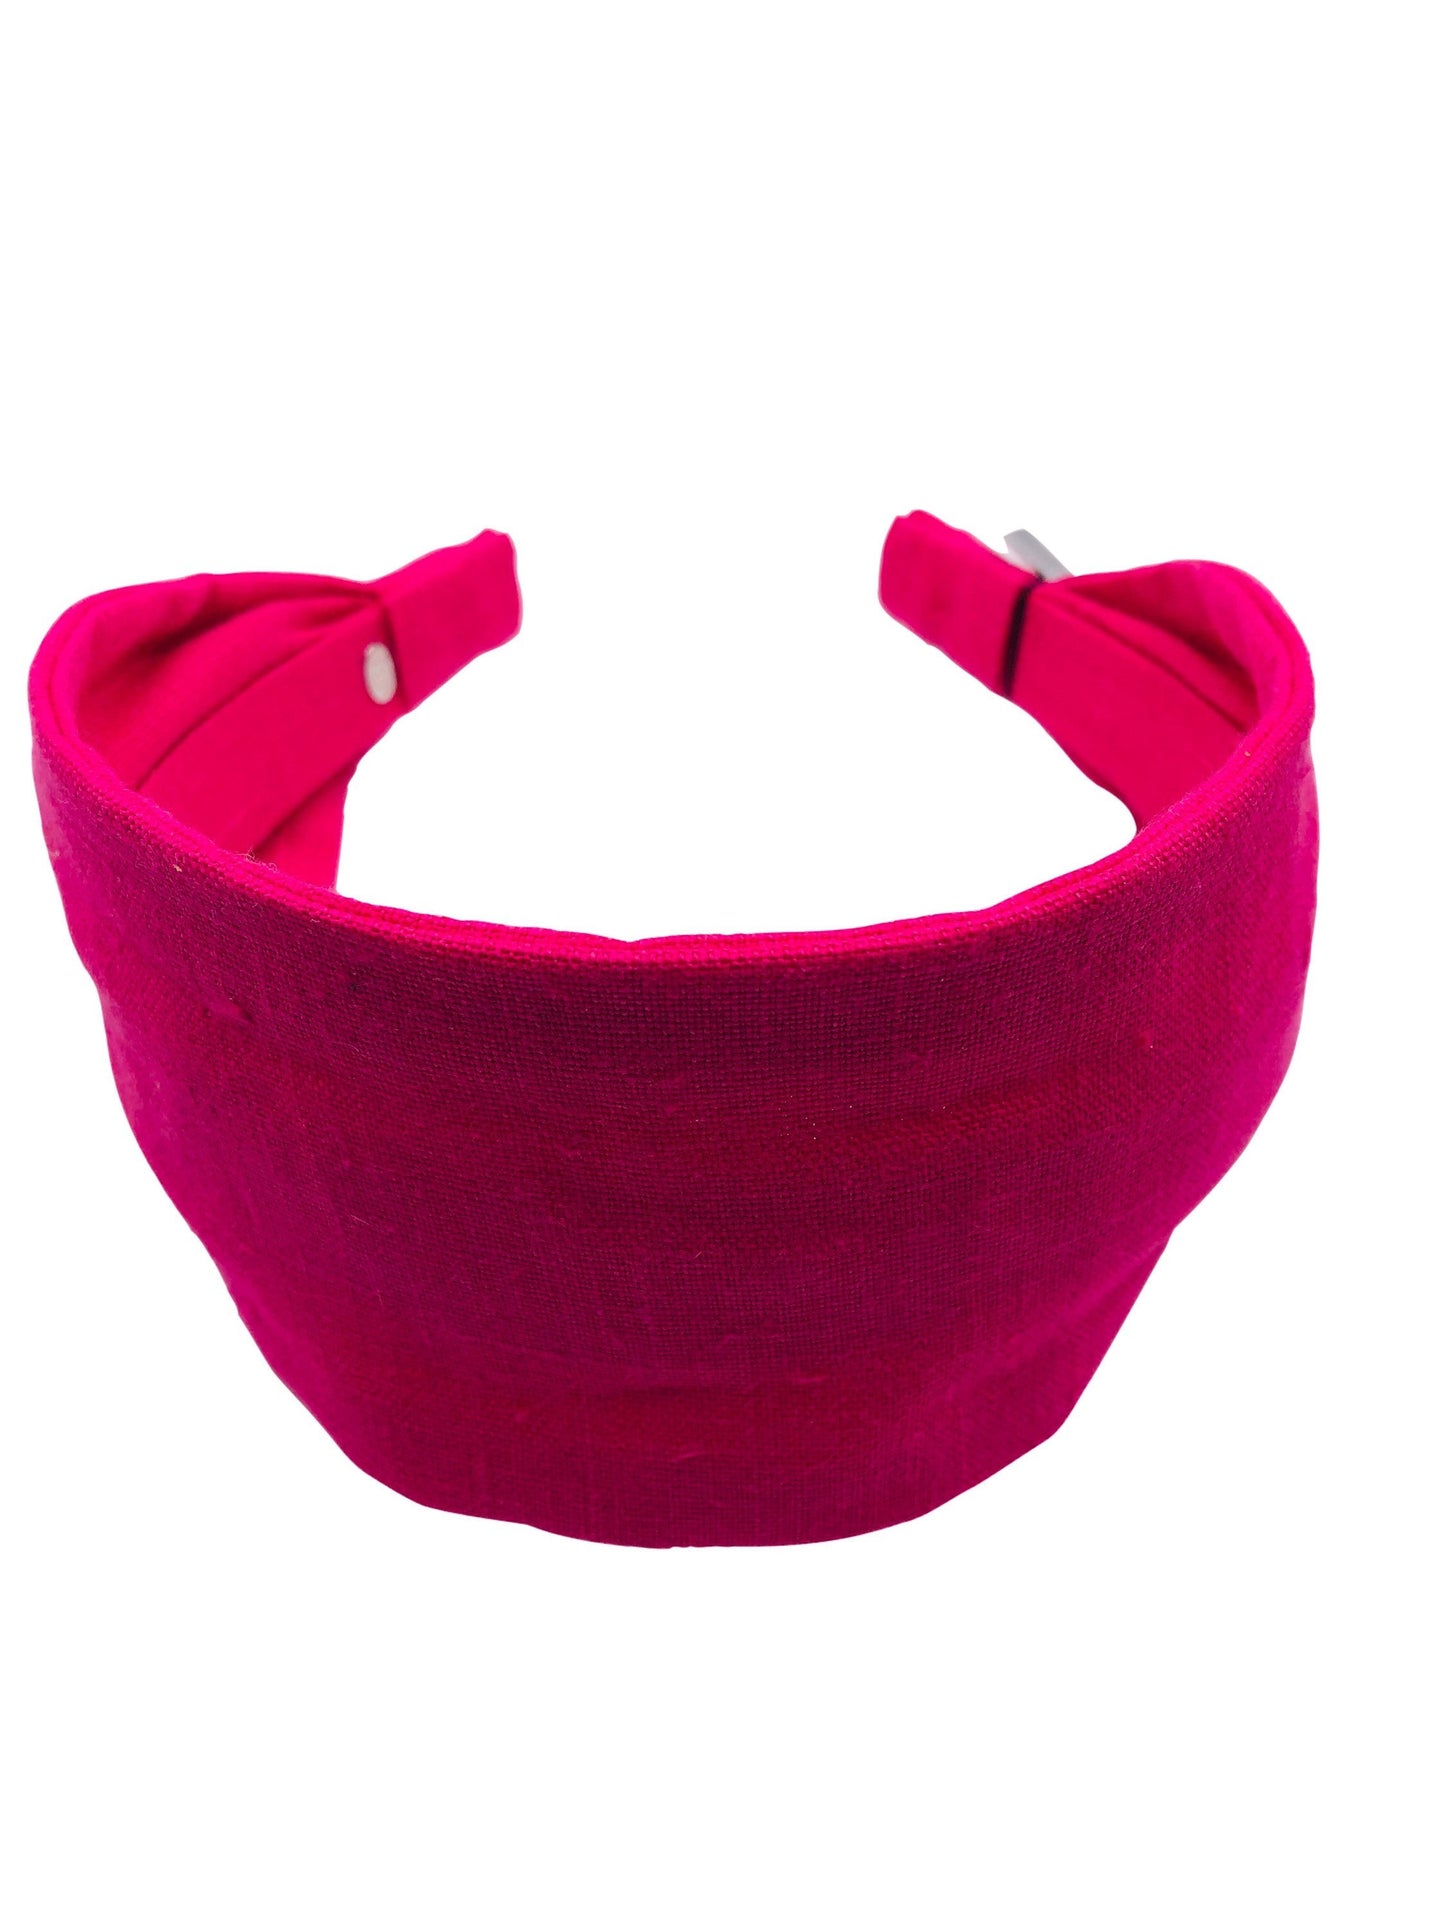 Karin's Garden 2.5-3" Linen Scarf Headband.  Handmade in the USA